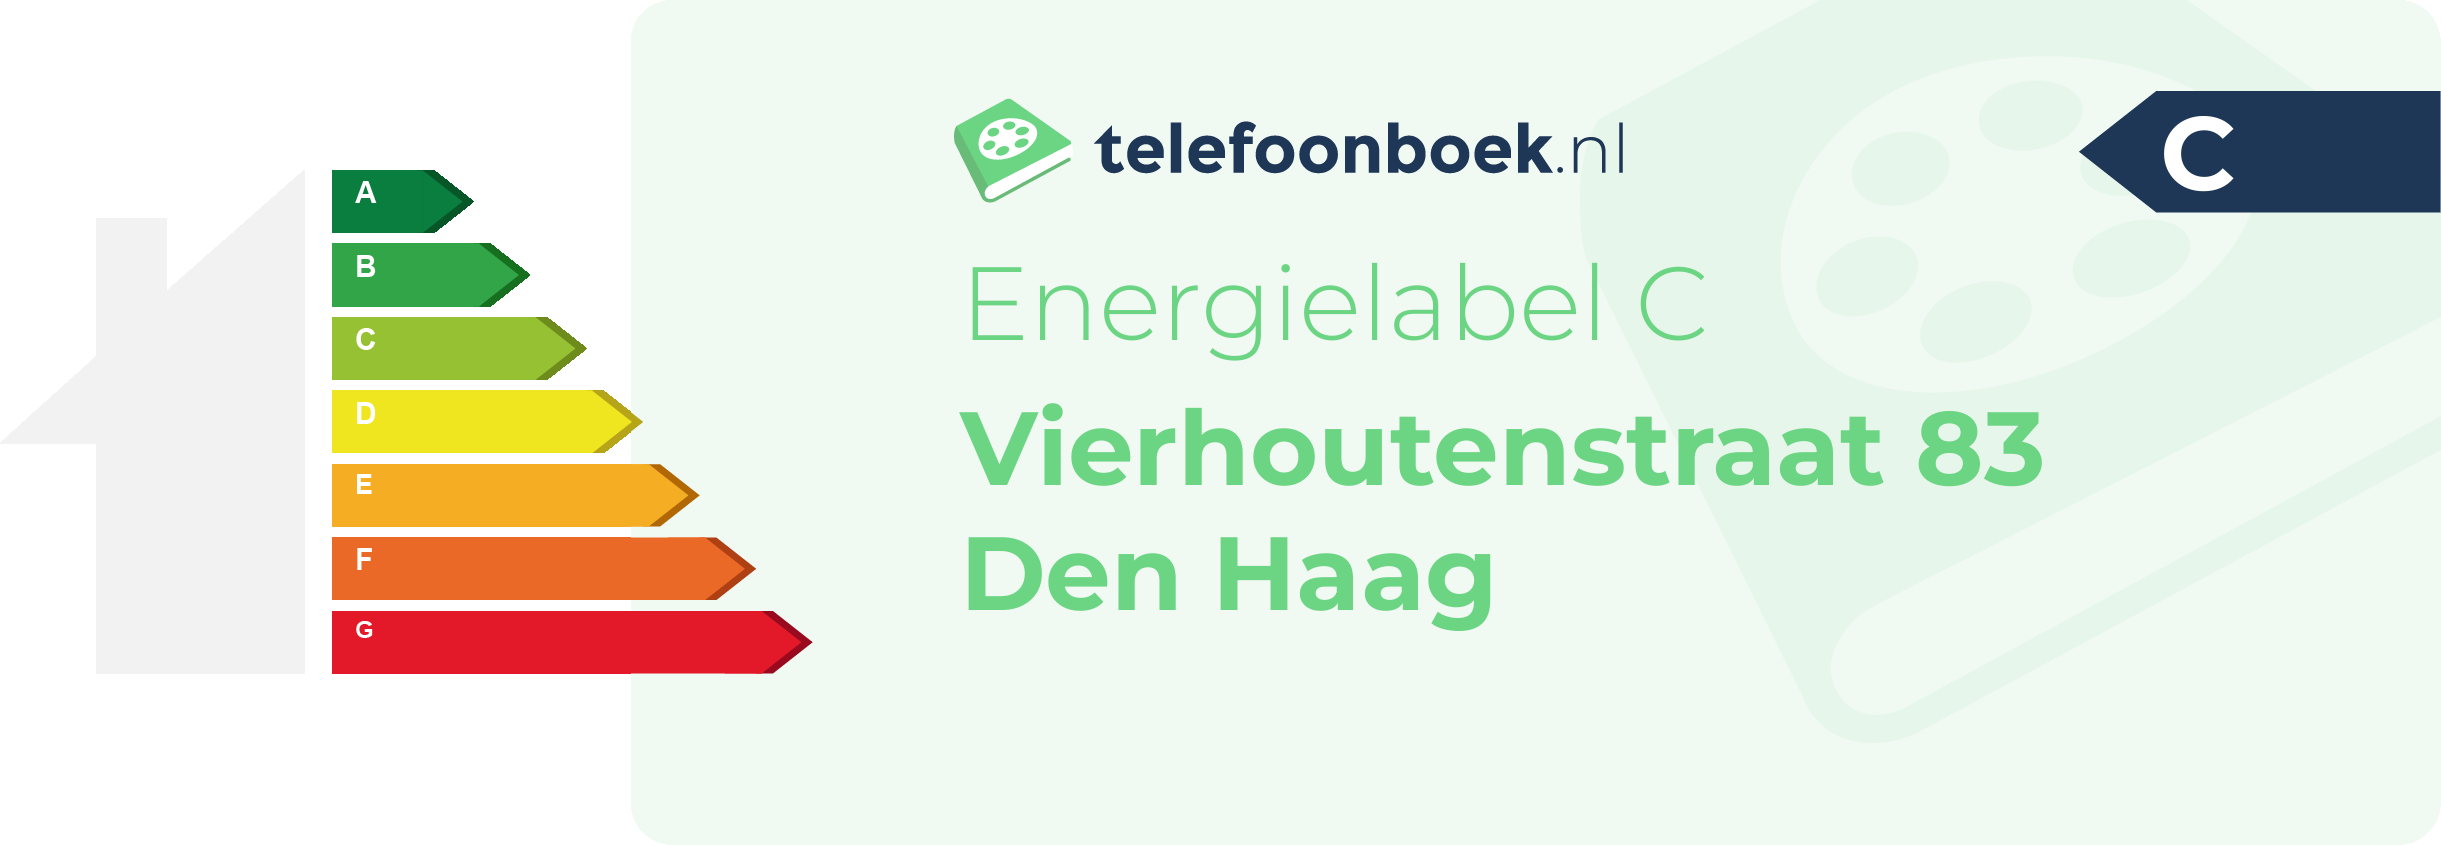 Energielabel Vierhoutenstraat 83 Den Haag